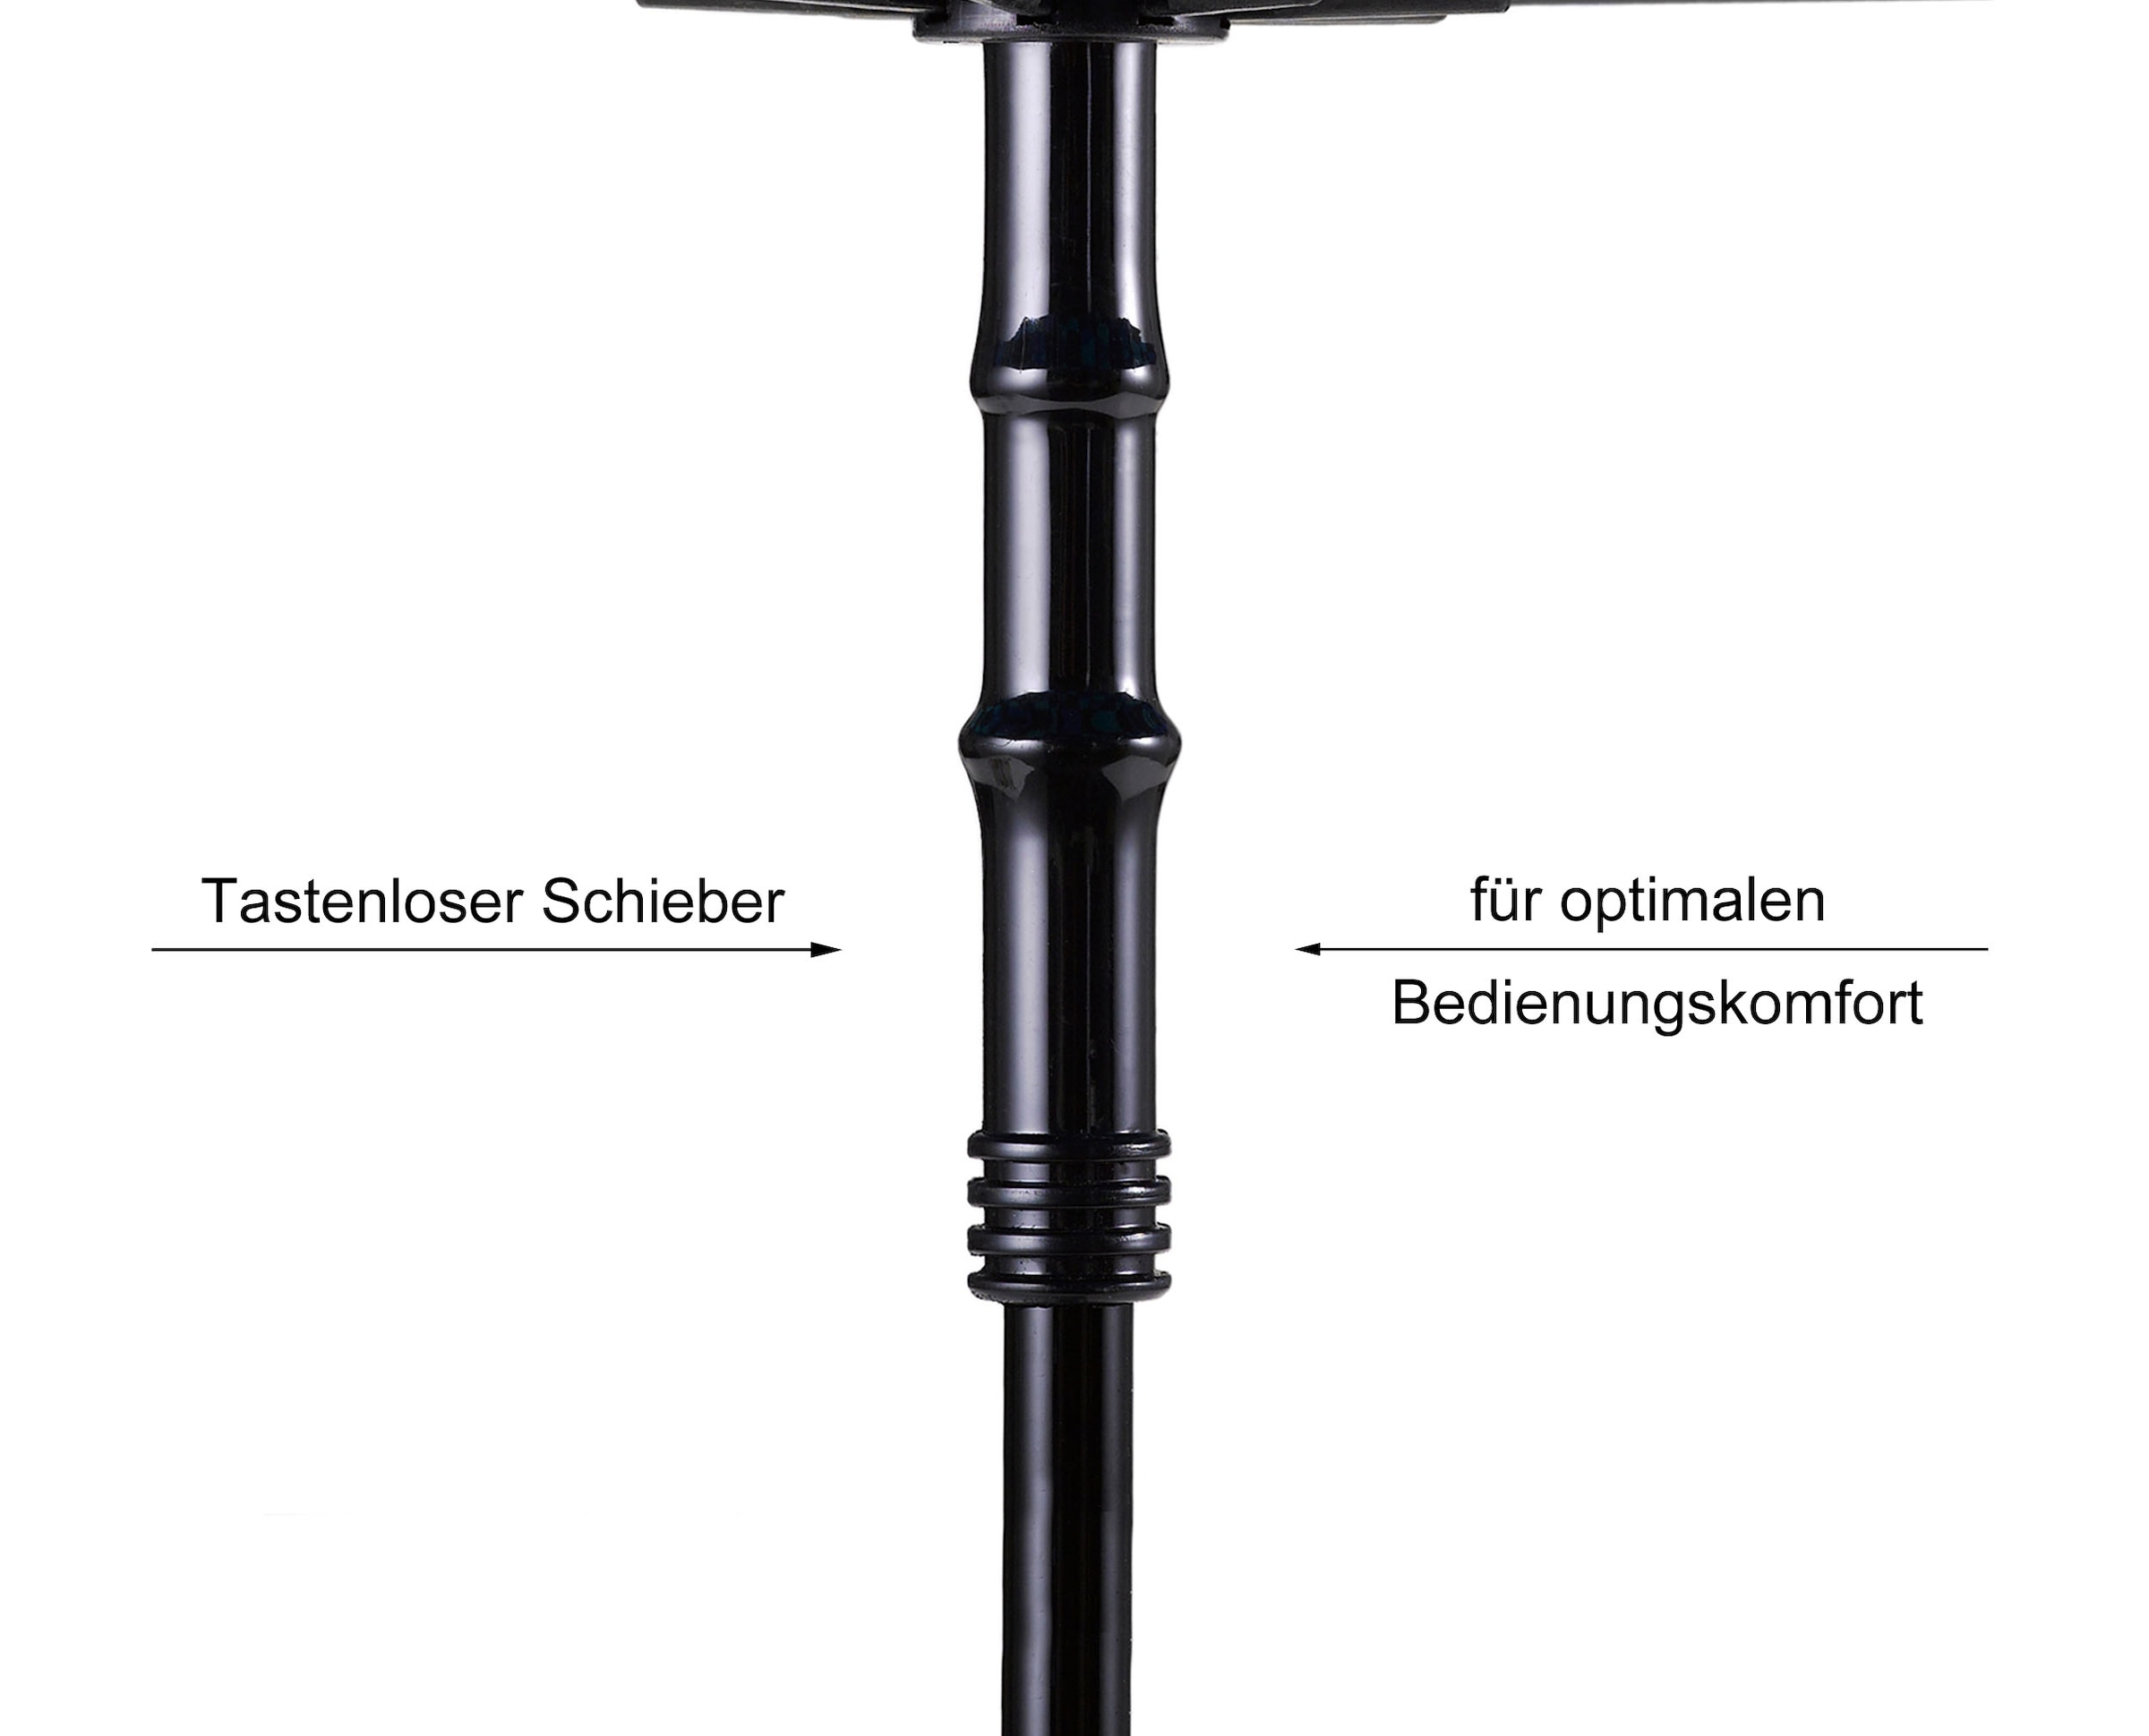 EuroSCHIRM® Stockregenschirm »Swing liteflex«, mit Schultertragegurt an der Hülle, besonders leicht und stabil